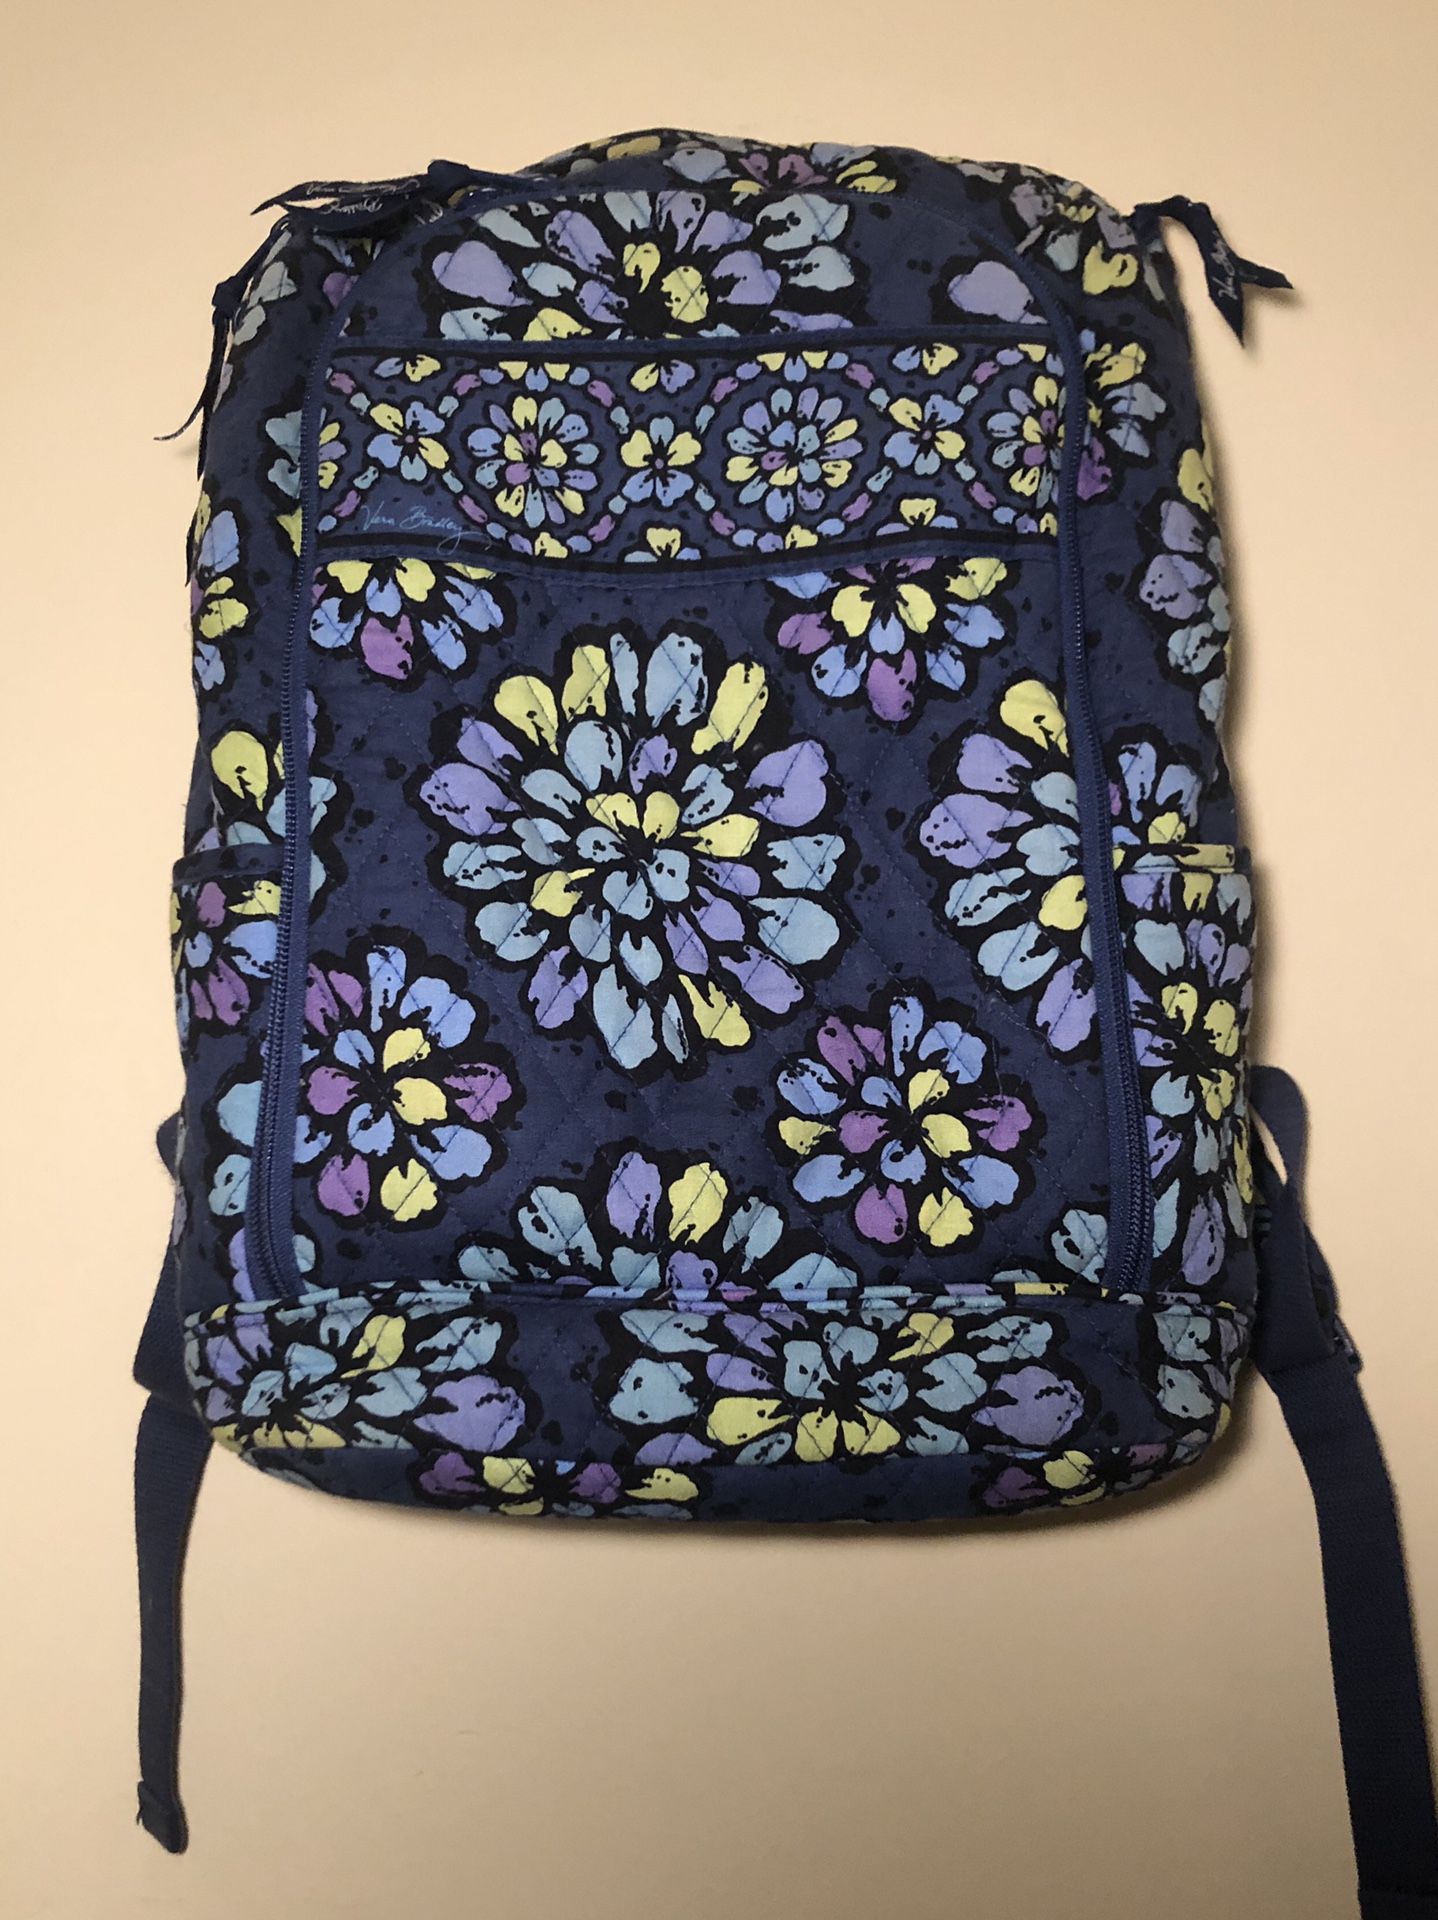 Vera Bradley Laptop Backpack